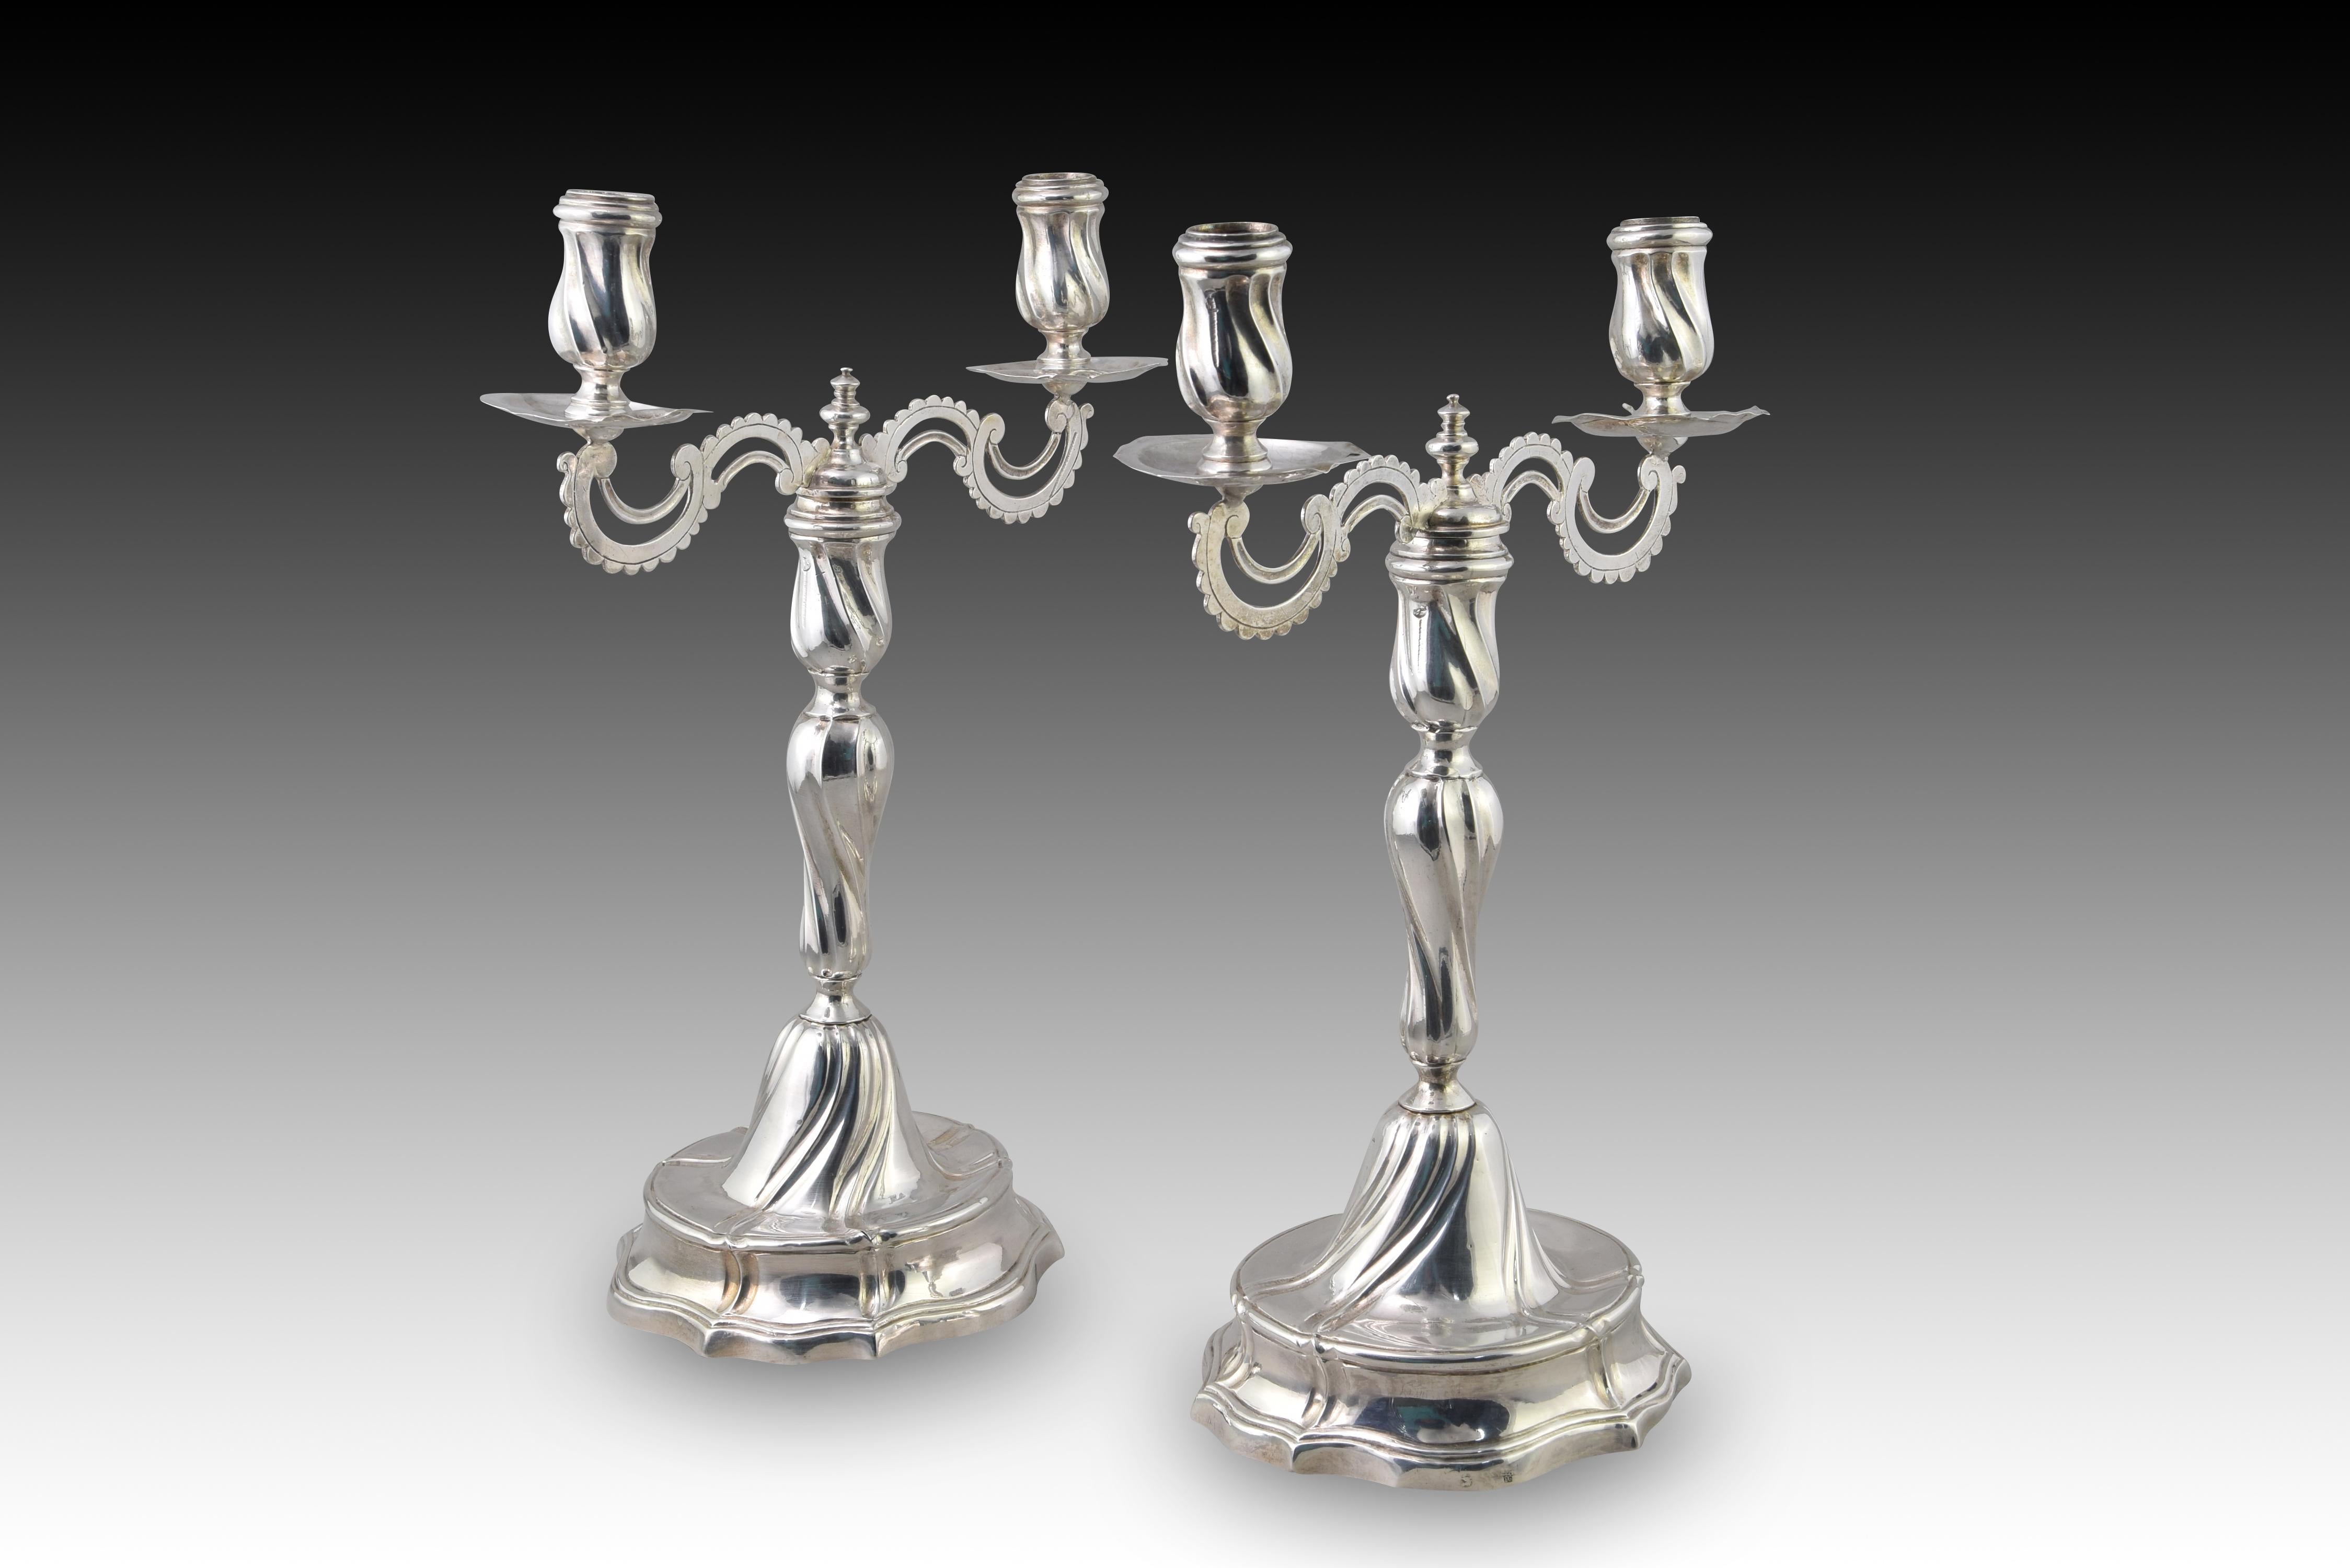 Paar umbaubare Kerzenhalter. Silber. MARTINEZ MORENO, Mateo; MUÑOZ. Cordoba, Spanien, 1793. 
Mit Kontrast und Meißelspuren. 
Paar silberne Kerzenständer in ihrer Farbe, die Stücke haben, um sie in Kerzenständer mit zwei Lichtern zu konvertieren